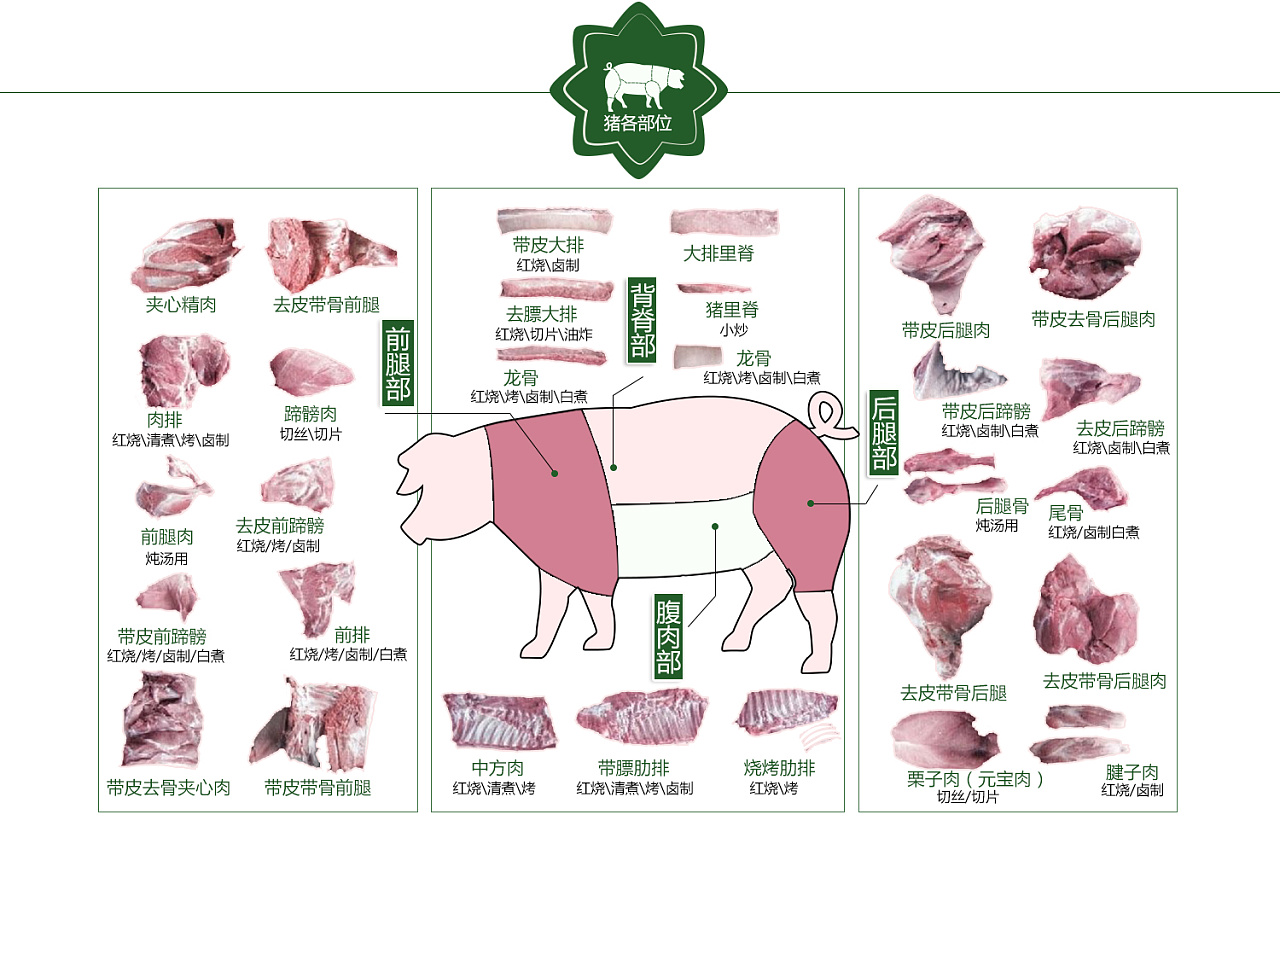 猪肉部位分割图详解图片